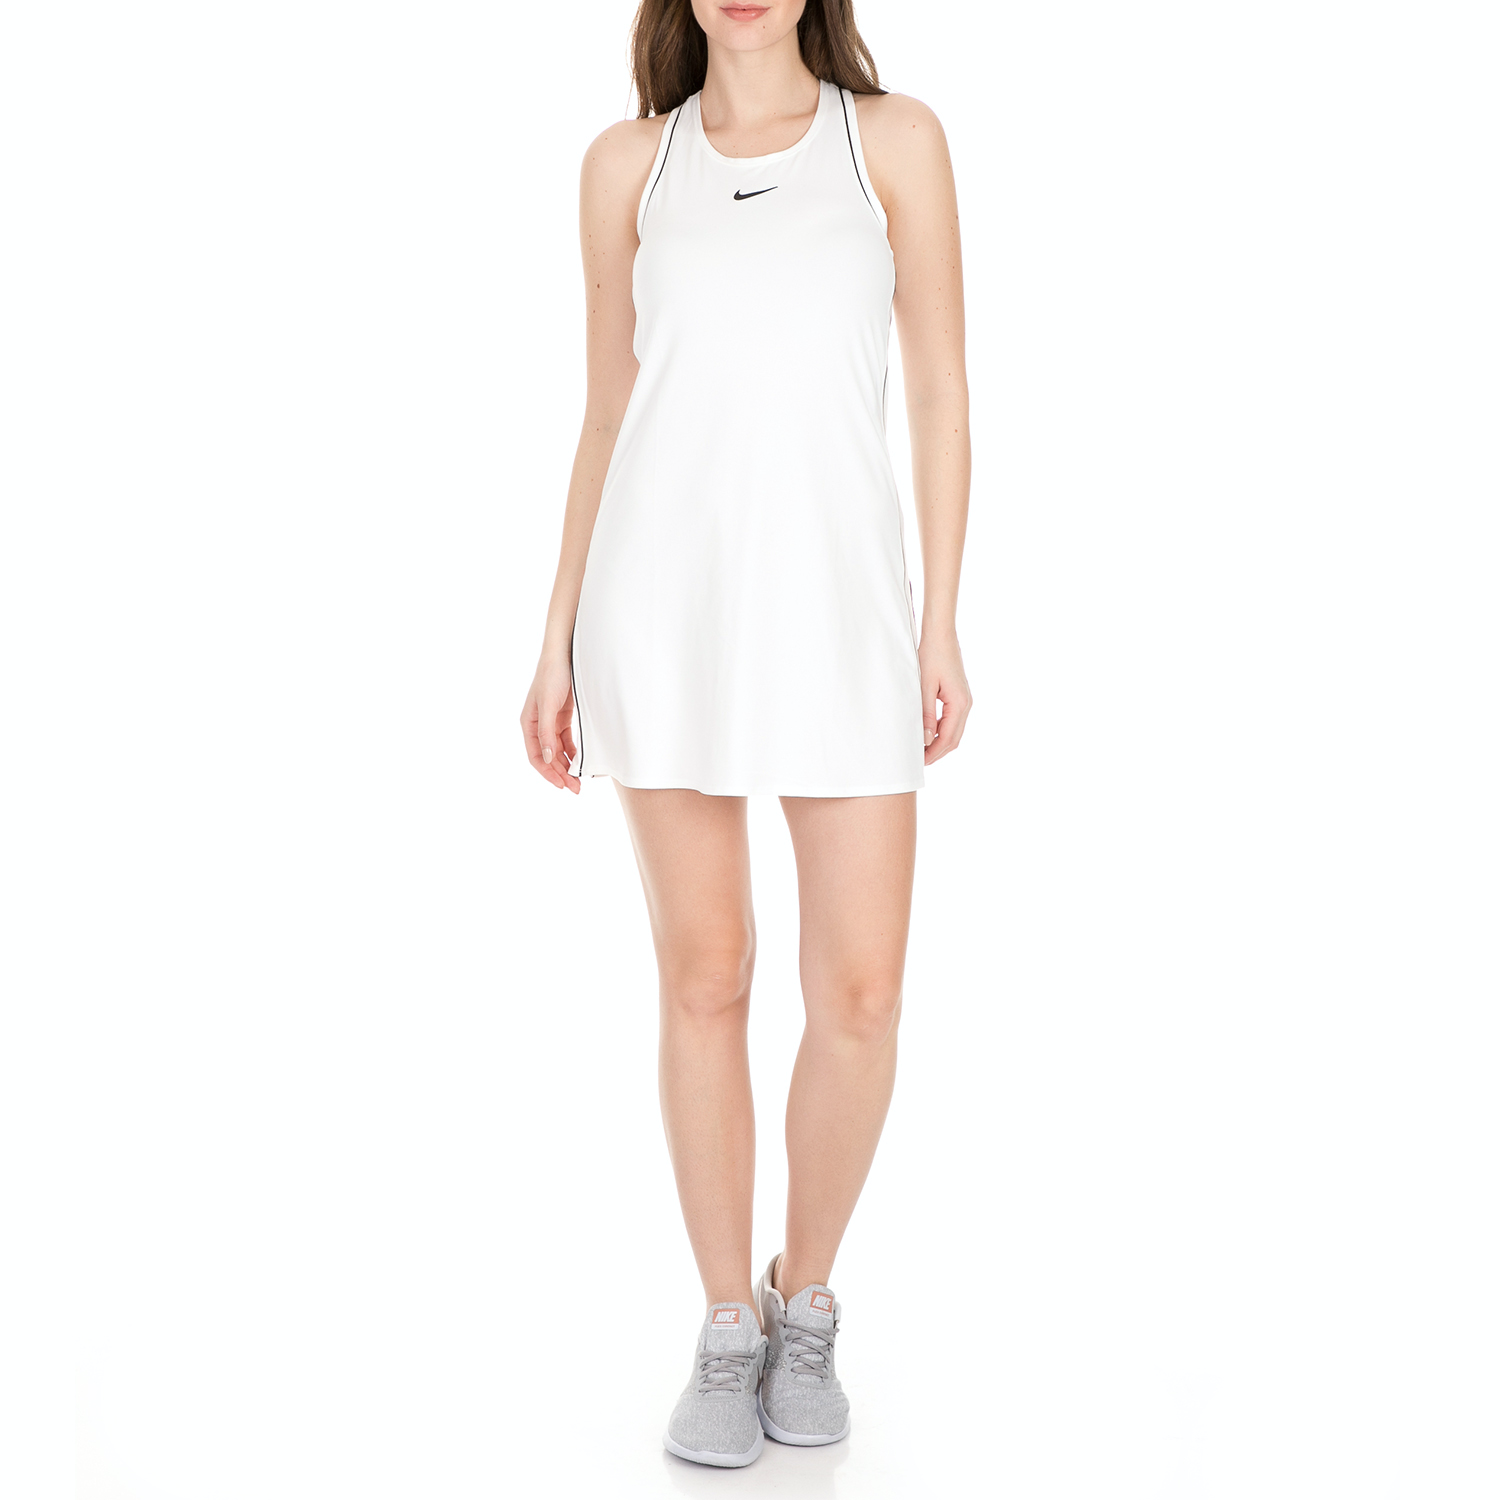 NIKE - Γυναικείο mini φόρεμα tennis Nike Sportswear λευκό Γυναικεία/Ρούχα/Φορέματα/Μίνι